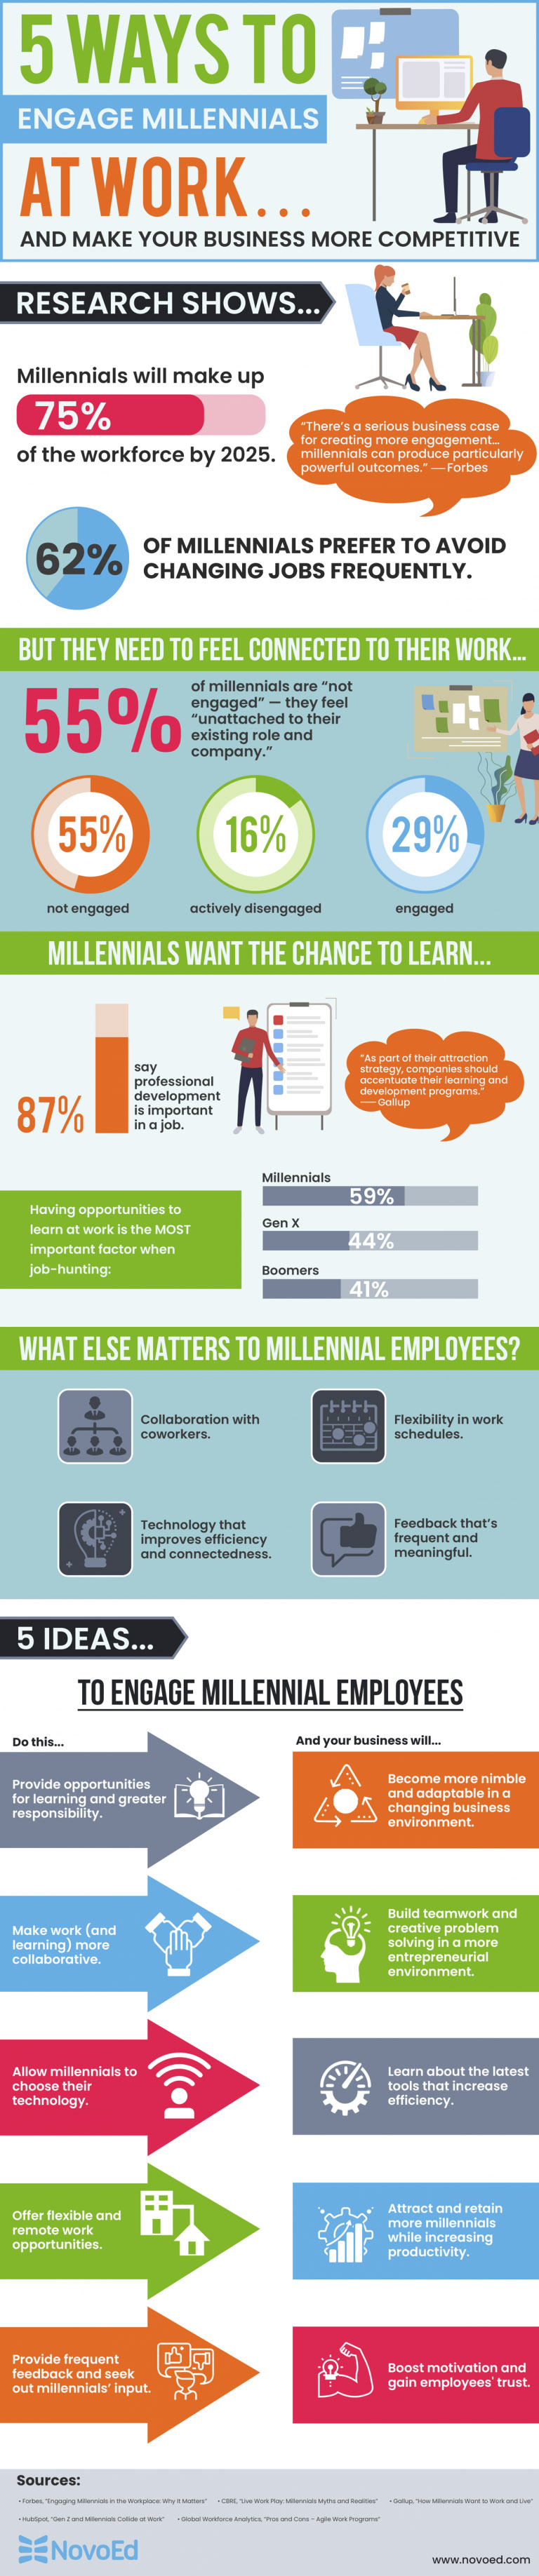 5 Ways to Engage Millennials at Work